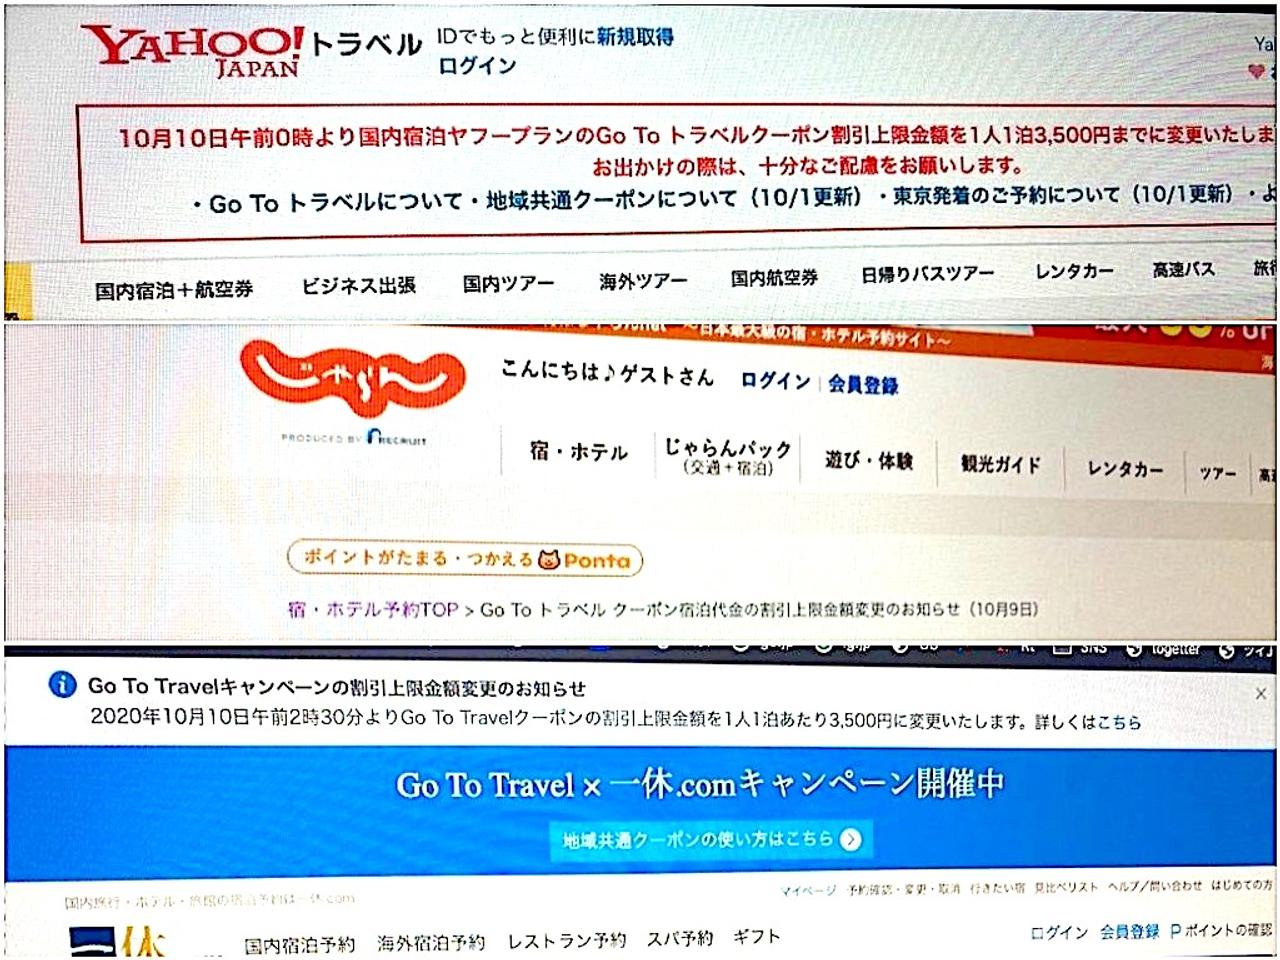 Yahoo!トラベル、じゃらん、一休.comはGoToトラベルの割引金額について3500円を上限とすると発表した。